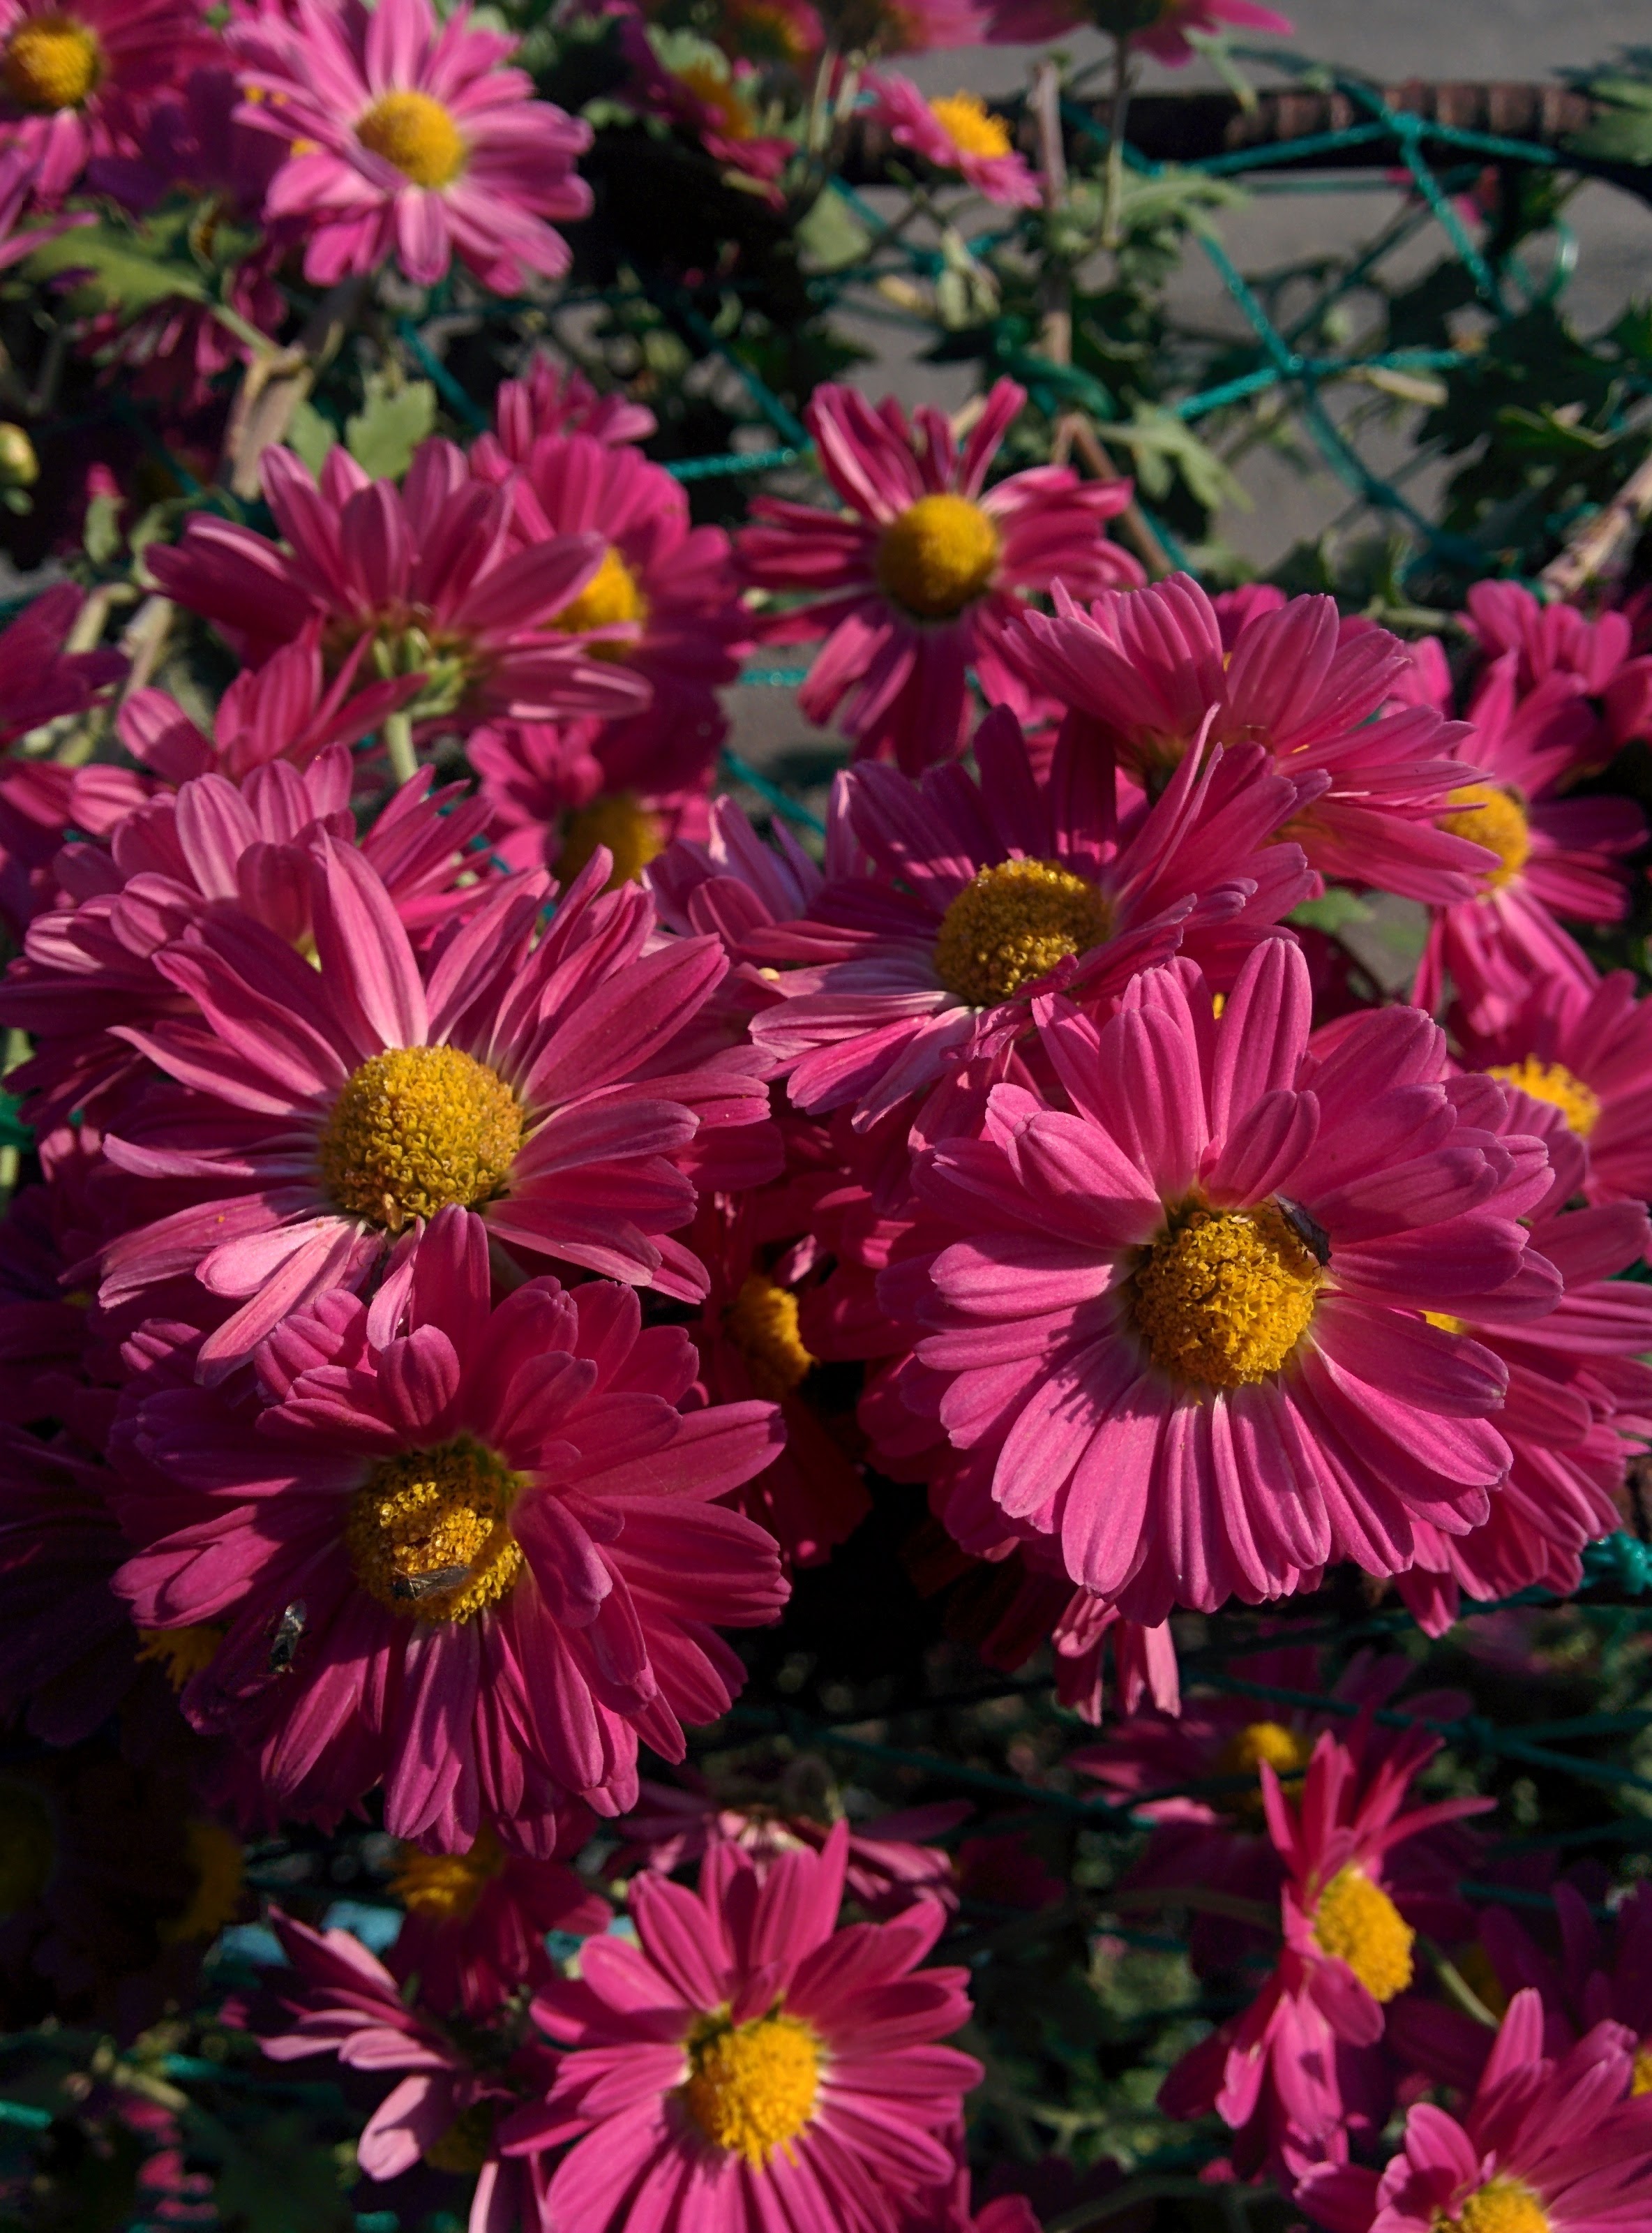 IMG_20151015_145402.jpg 숨은그림찾기: 분홍색 국화 꽃에 앉은 아주 작은 애긴노린재